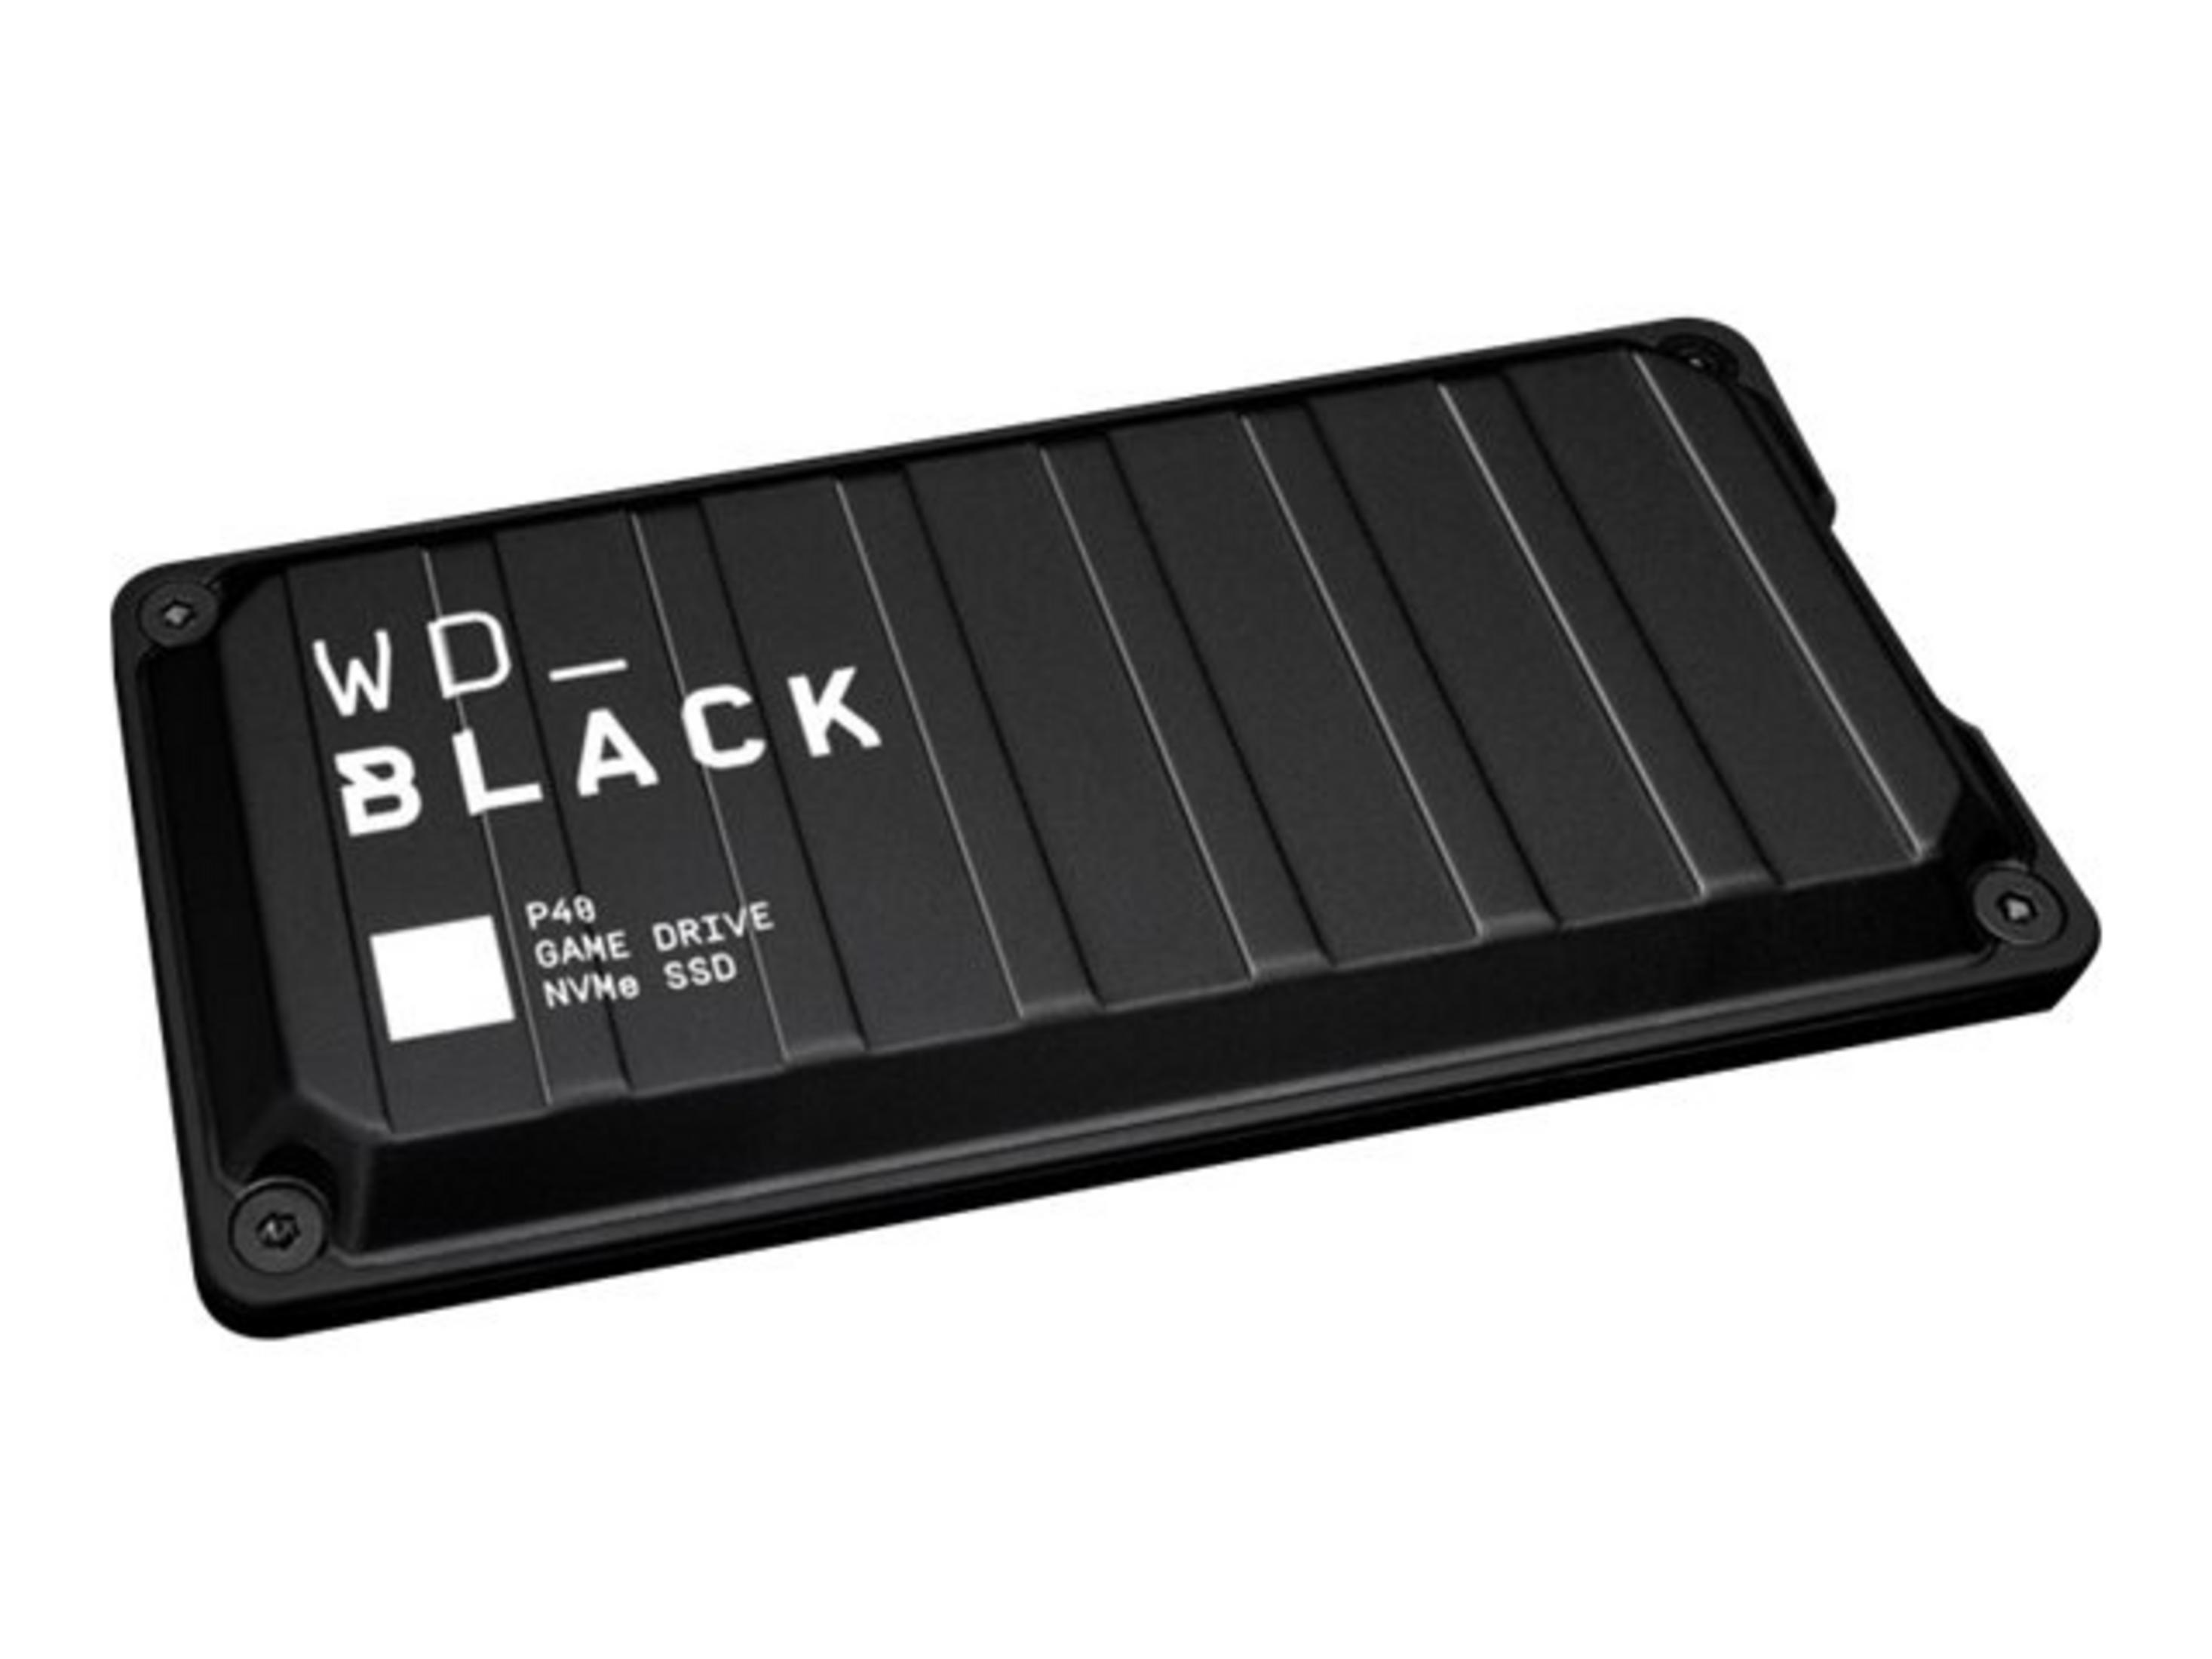 SANDISK 500 DRIVE extern, P40 S, 2,5 500GB GAME SSD, Schwarz WD_BLACK Zoll, WDBAWY5000ABK-WESN GB